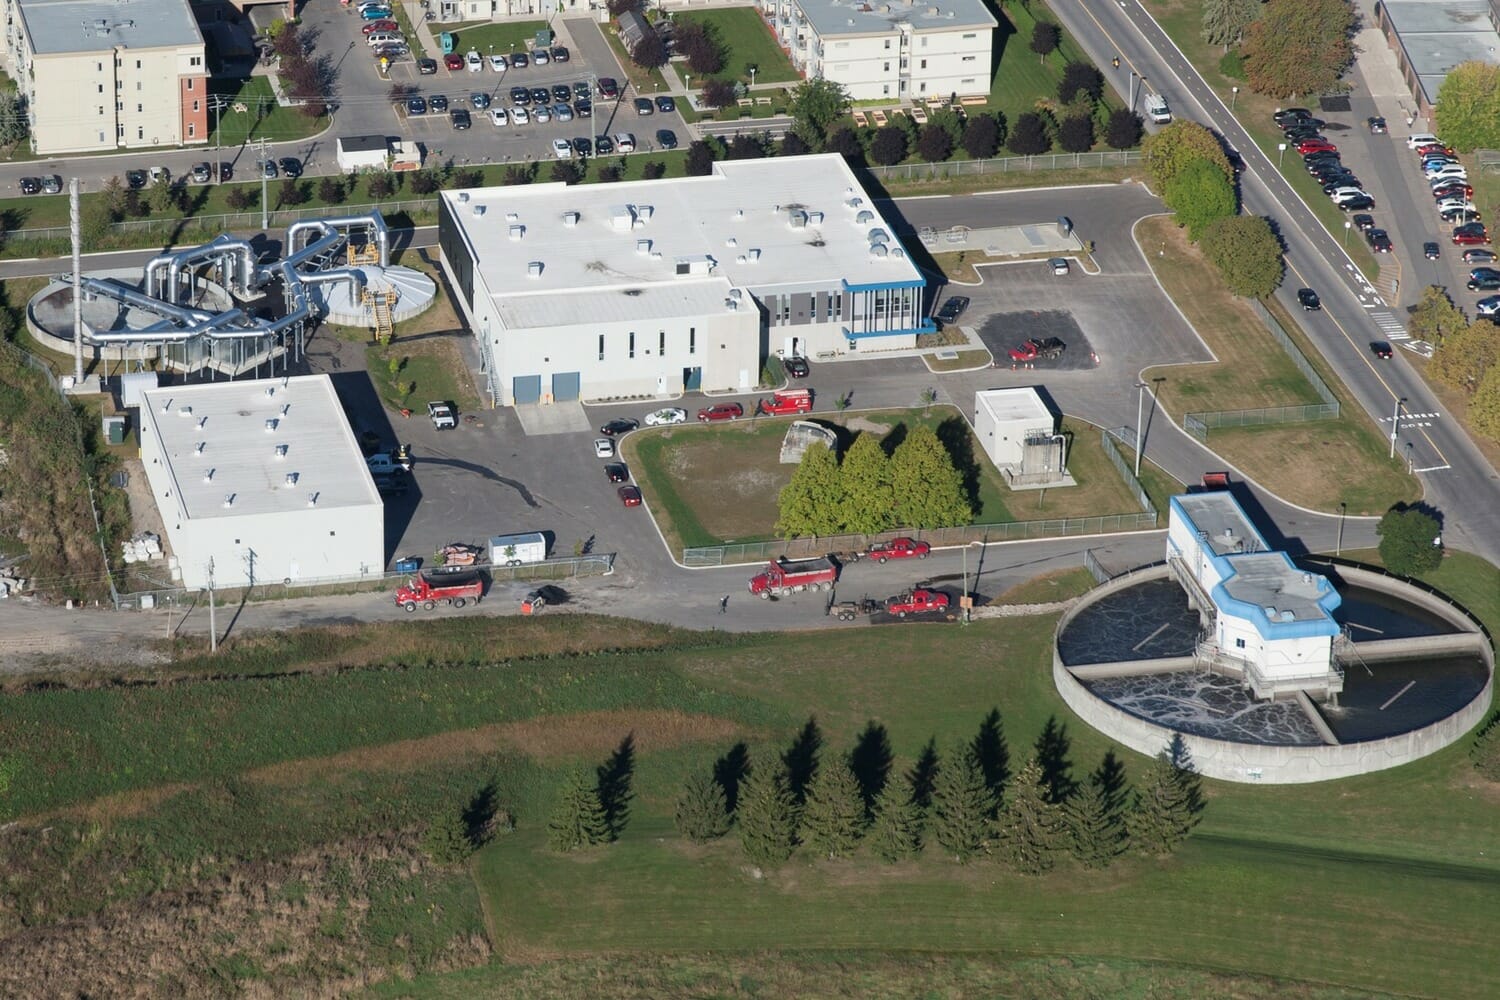 Une vue aérienne d’une usine de traitement d’eau.